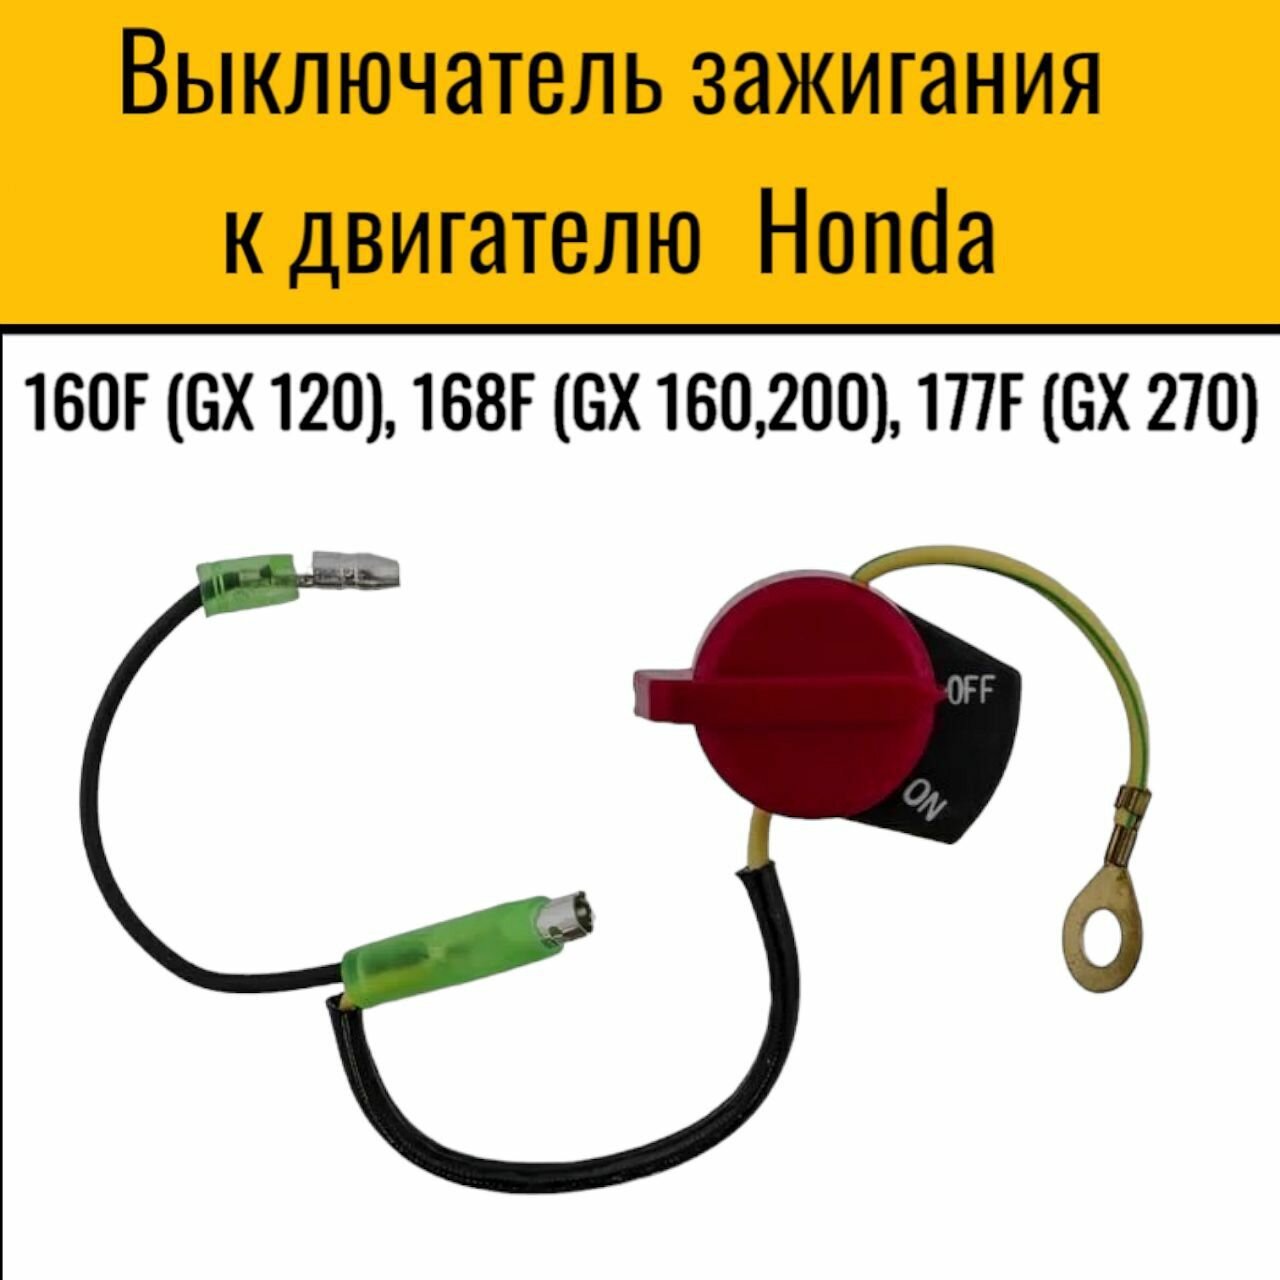 Выключатель зажигания для мотопомп мотоблоков снегоуборщиков виброплит подходит к двигателю Honda 160F (GX 120) 168F (GX 160200) 177F (GX 270) .